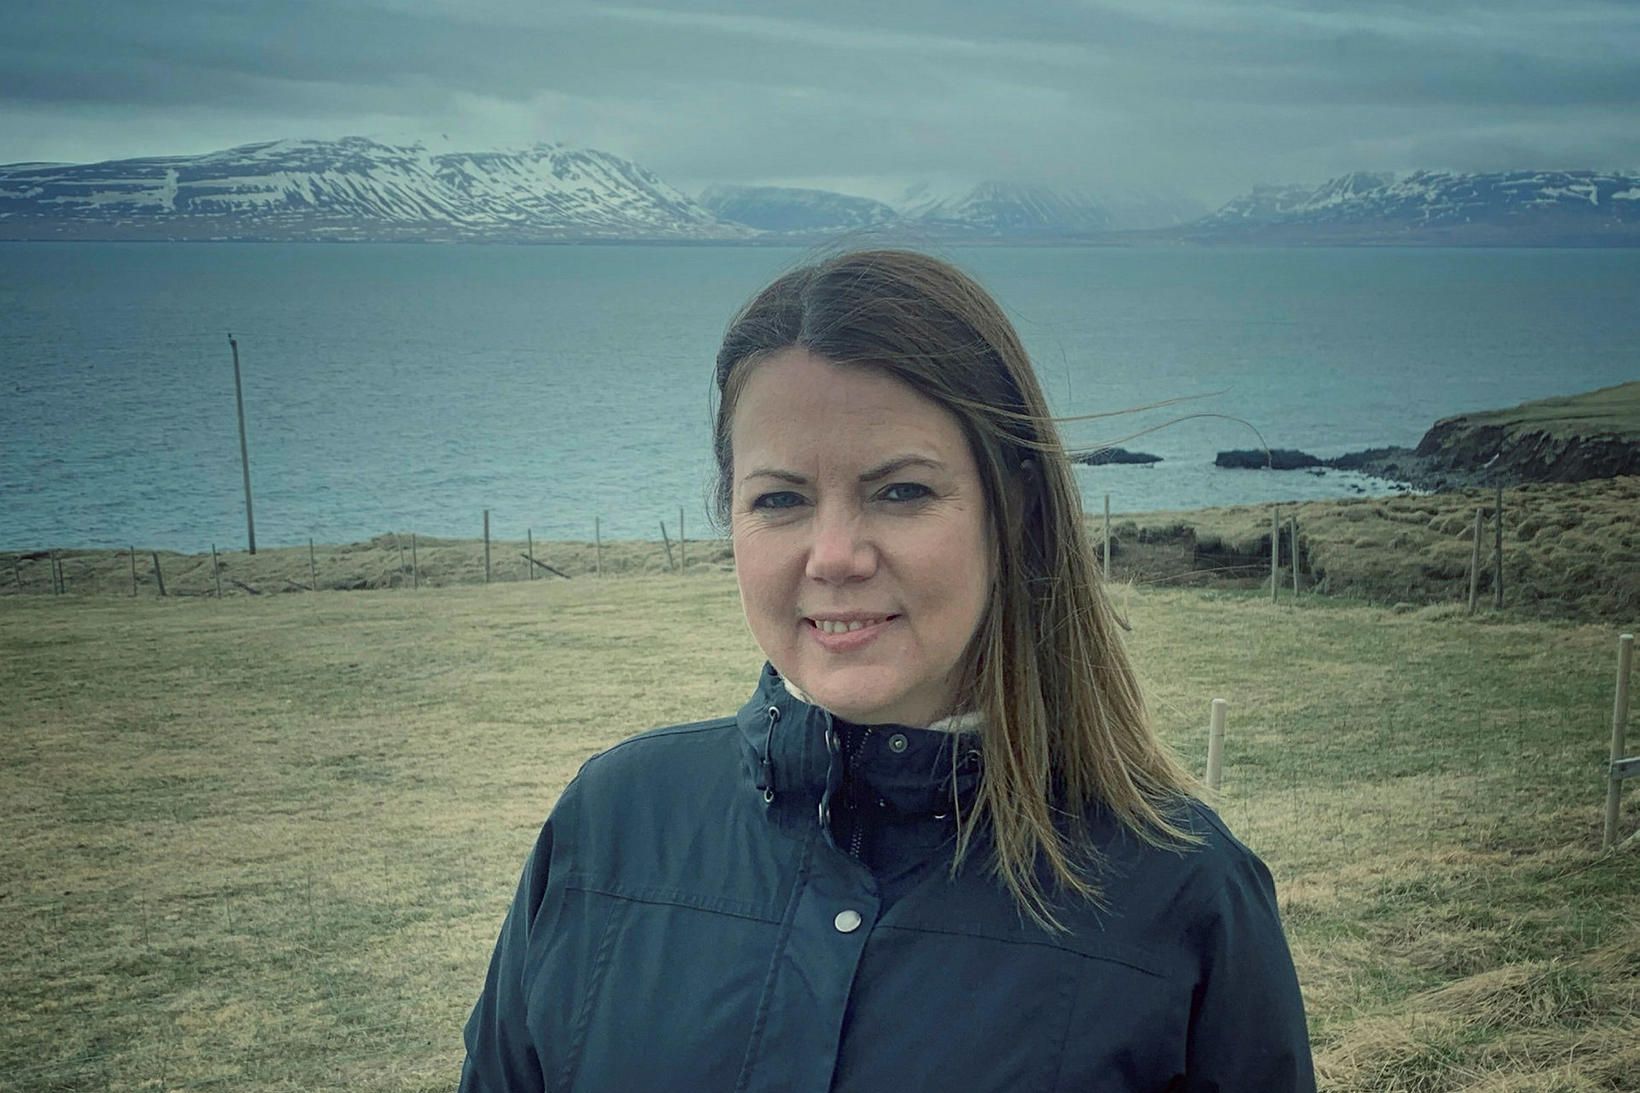 Guðný Hilmarsdóttir rekur vefinn EKTA Iceland sem miðlar upplýsingum um …